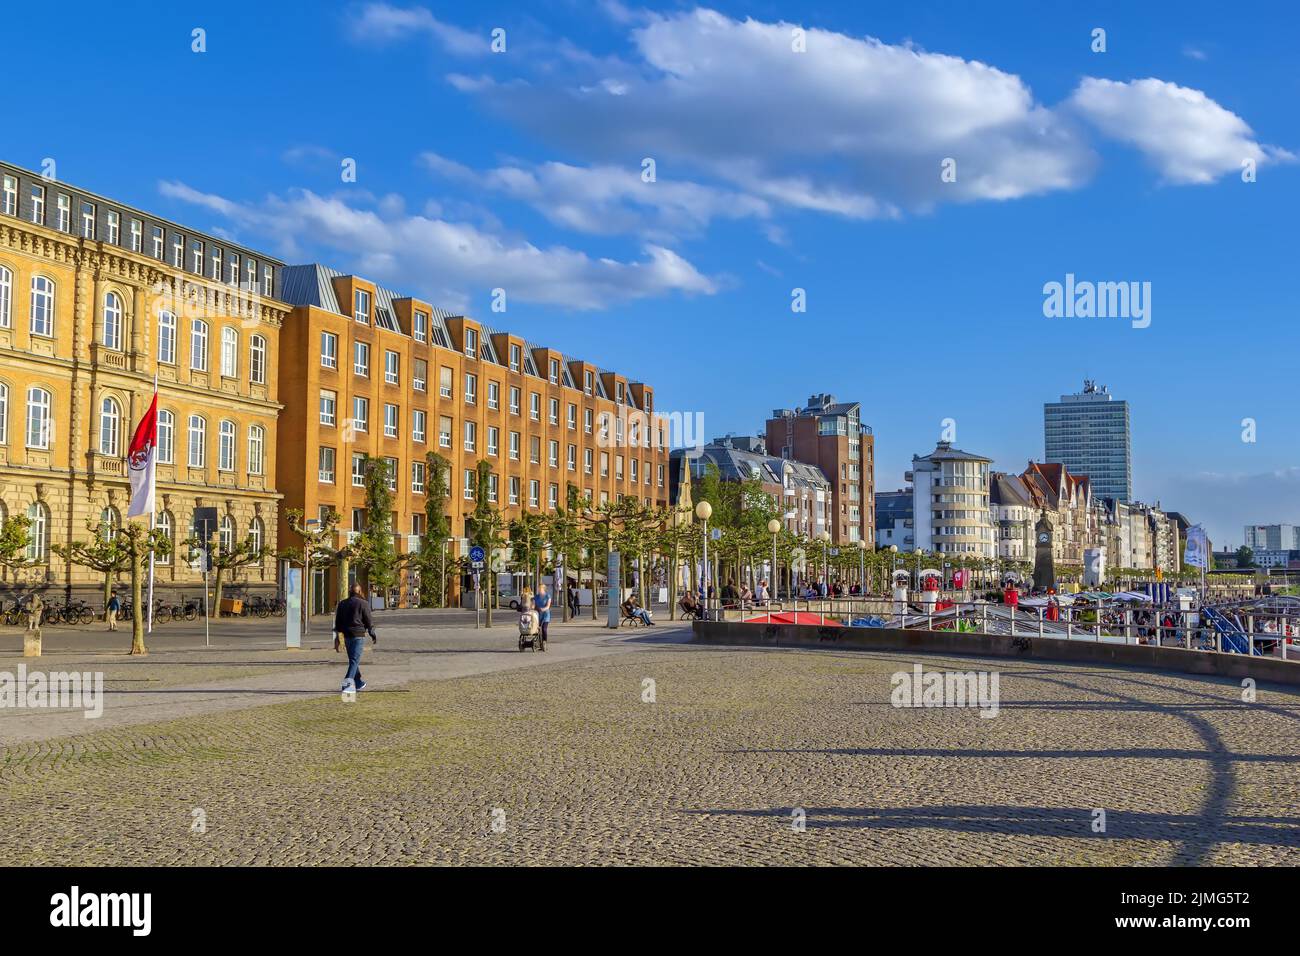 Embankment in Dusseldorf, Germany Stock Photo